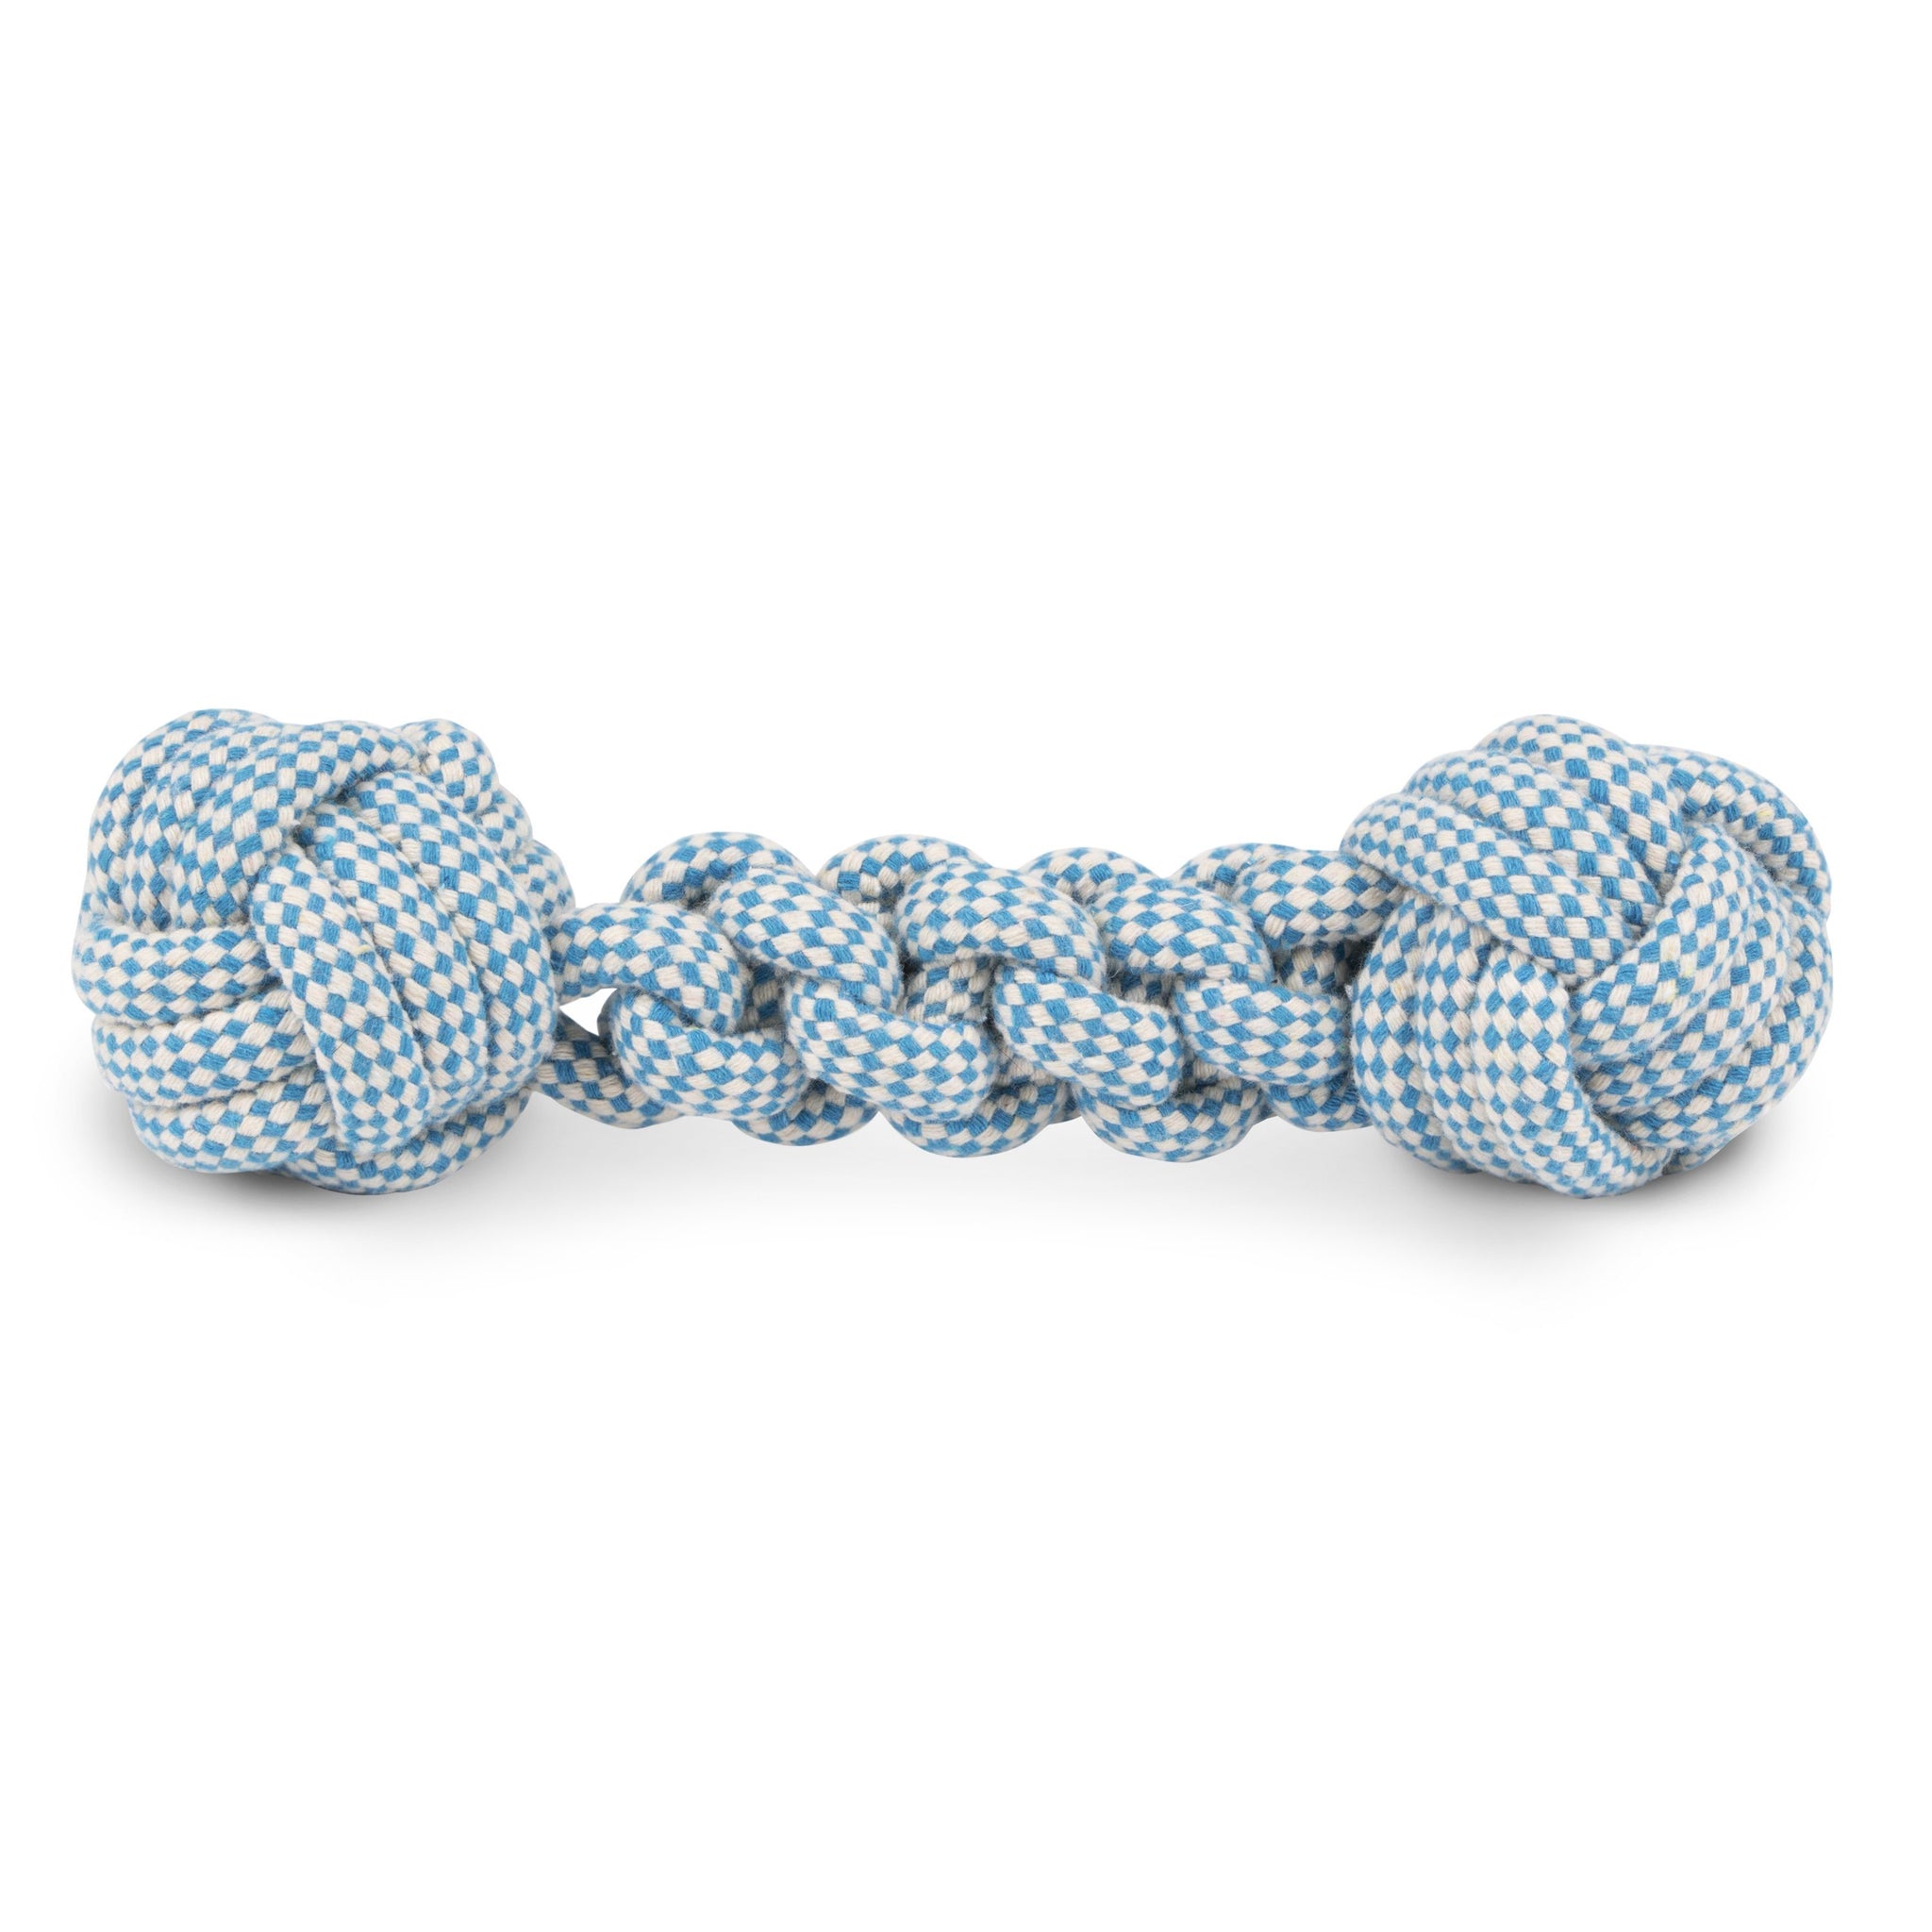 Harry Barker Cotton Rope Toy Storage Bin, Blue